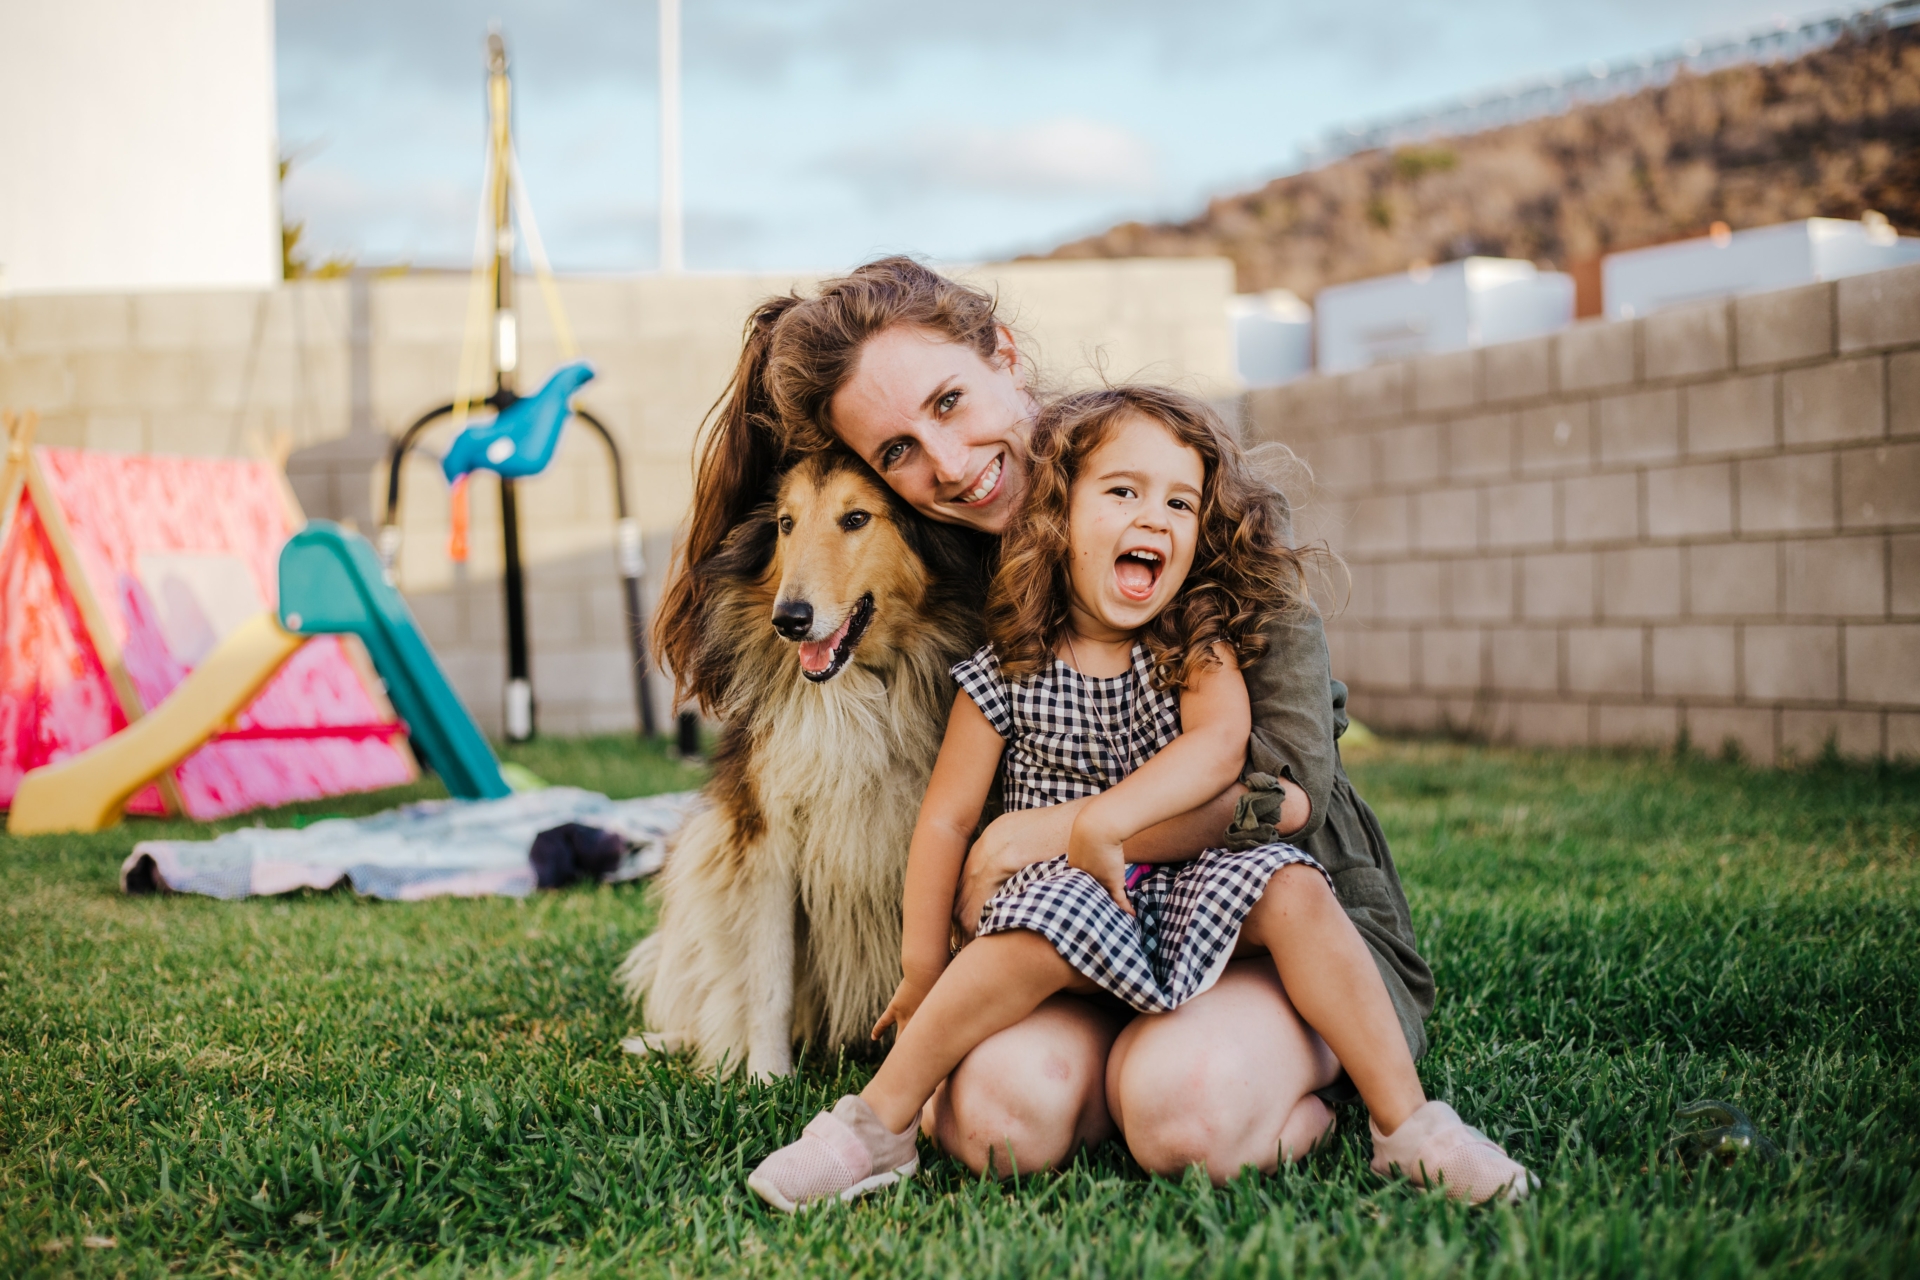 Macht Spaß und steigert die Lebensfreude: Kleiner Familienhund